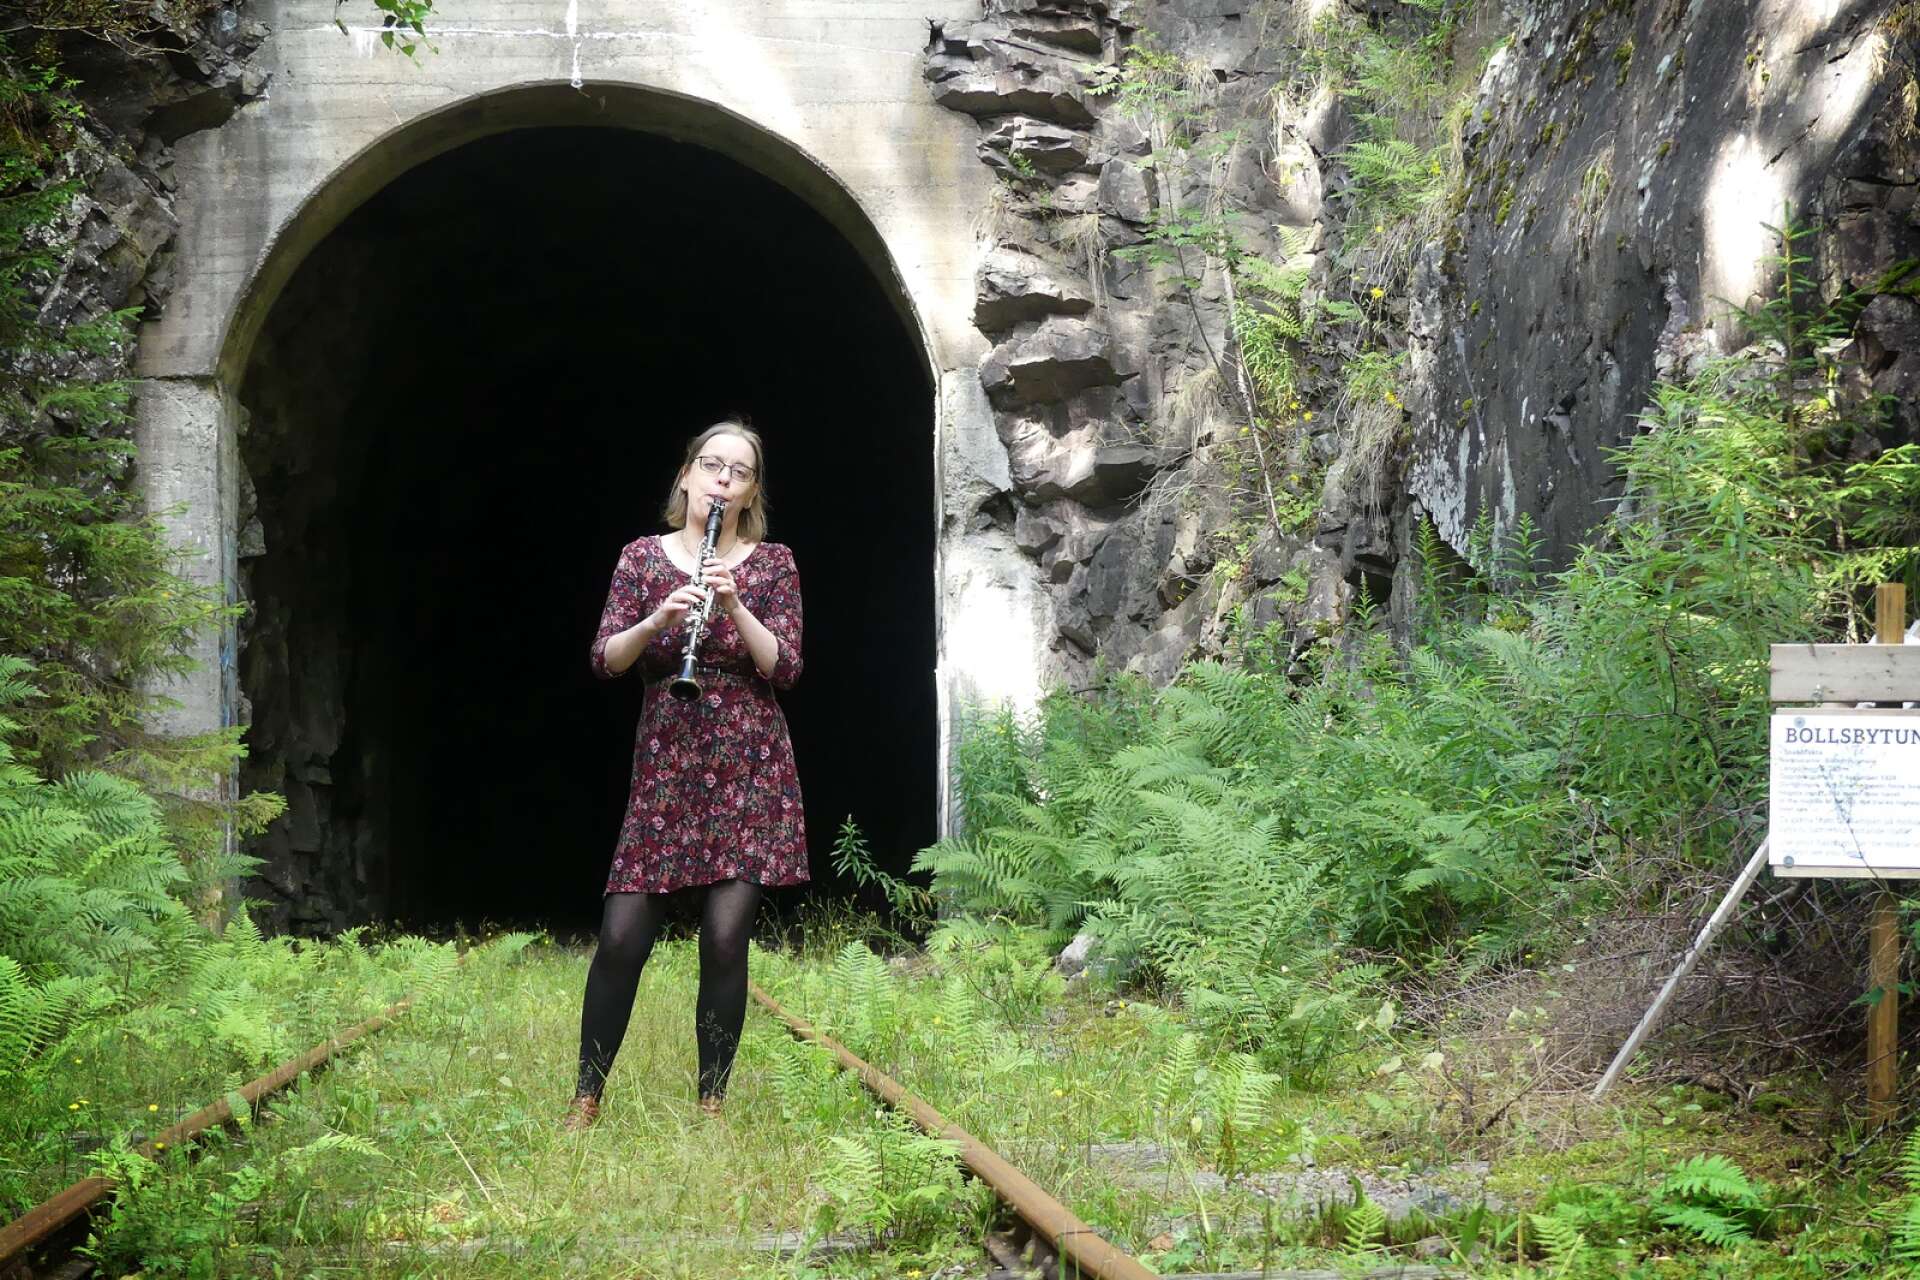 Musikern och kulturentreprenören Therese Olsson Hugosson har sedan ett år tillbaka arbetat med ett nytt kulturprojekt. I augusti är det premiär för det första kulturevenemanget i projektet ”Tågtunnel 263 - I sägnernas spår”. Nämligen en folkmusikföreställning inuti Bollnäs tågtunnel i Svanskog.